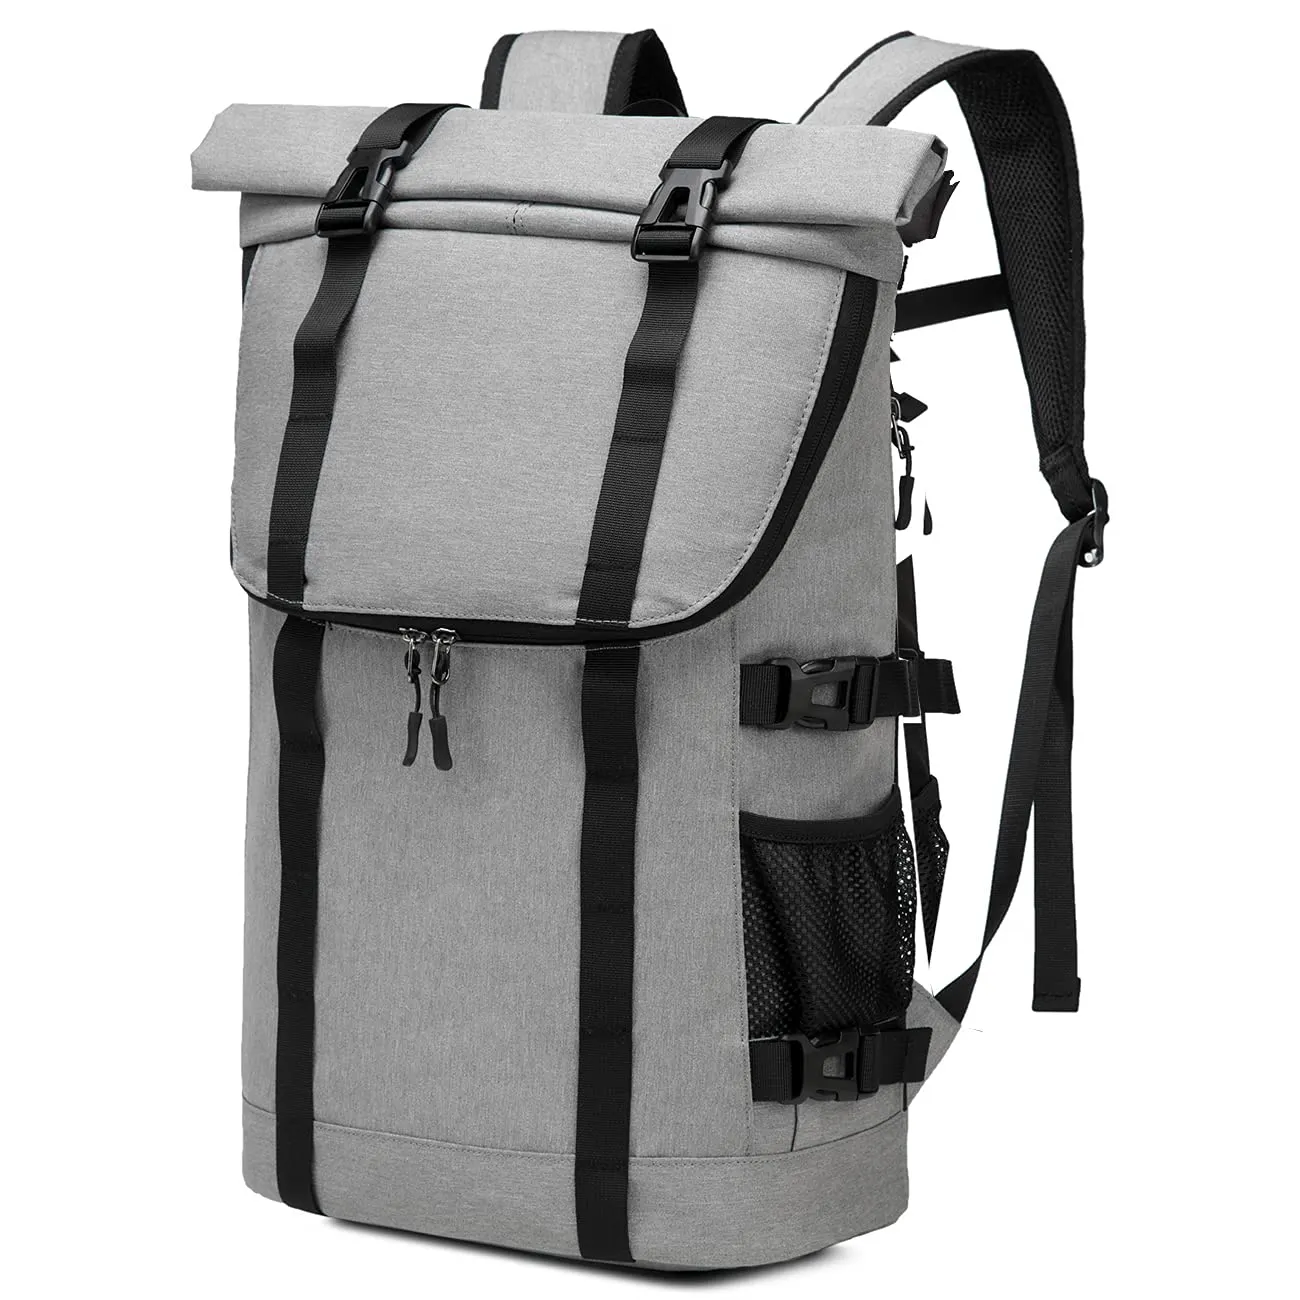 Iş/seyahat/okul çok fonksiyonlu rulo up dizüstü sırt çantası ile su geçirmez ve anti-hırsızlık özelliği günlük dayanıklı kullanım